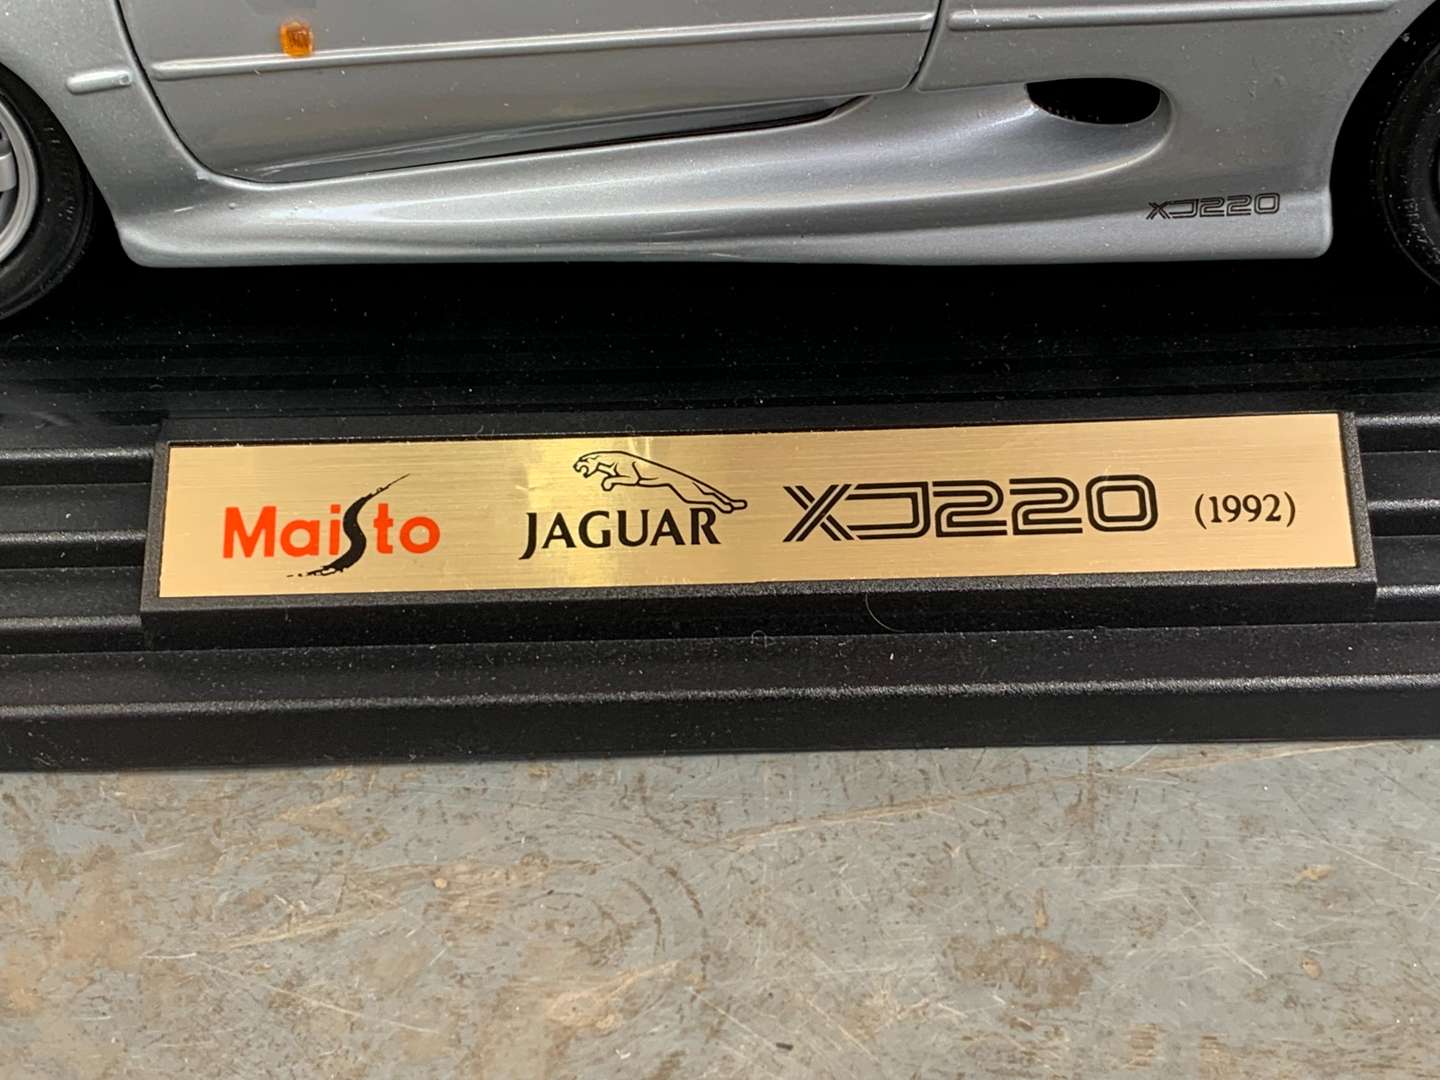 <p>Maisto Jaguar XJ220 1;12 Scale Boxed Die Cast Car</p>